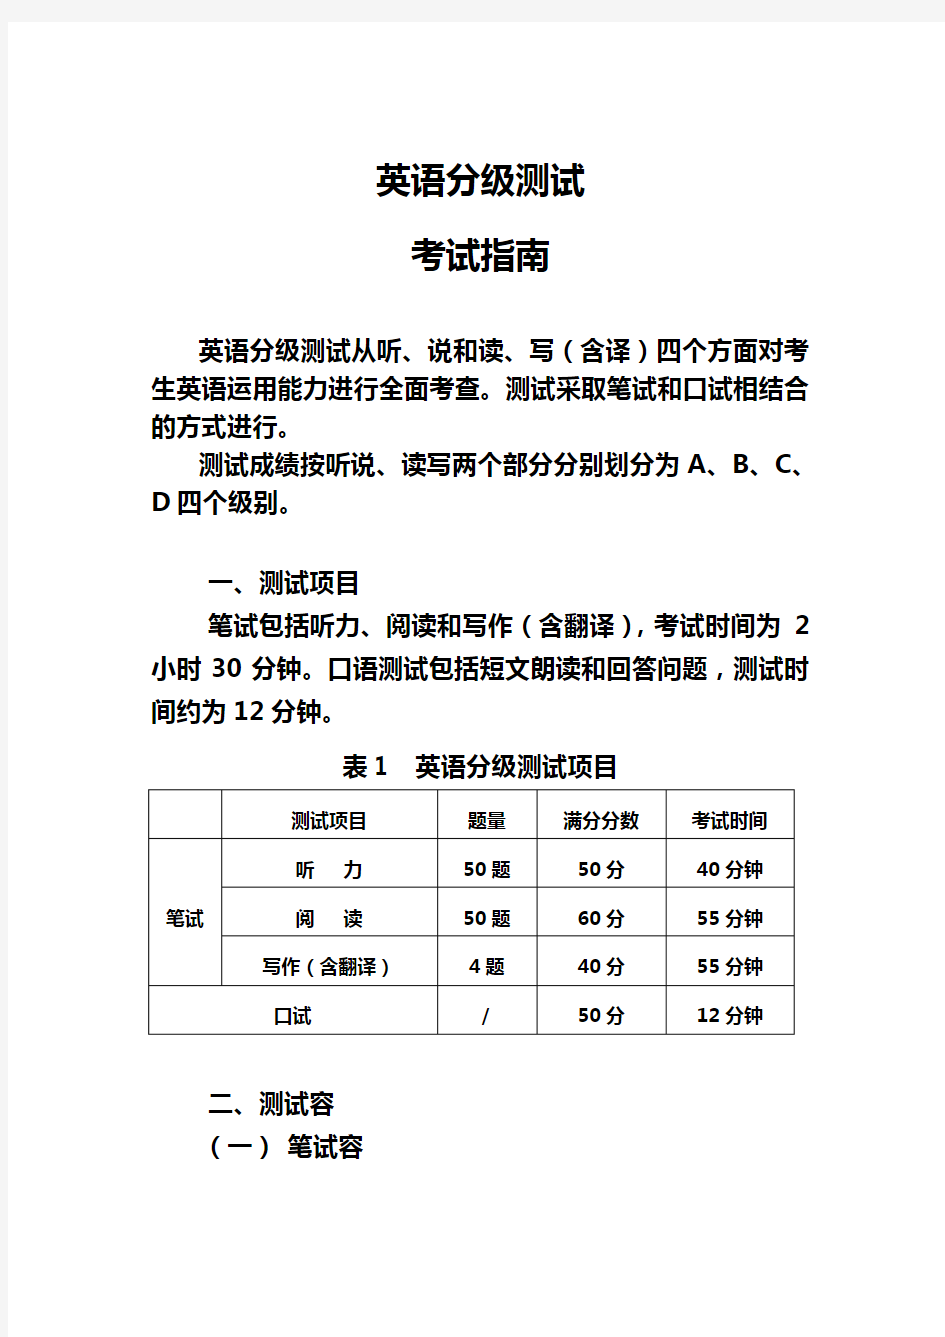 中国石化英语分级测试考试的指南